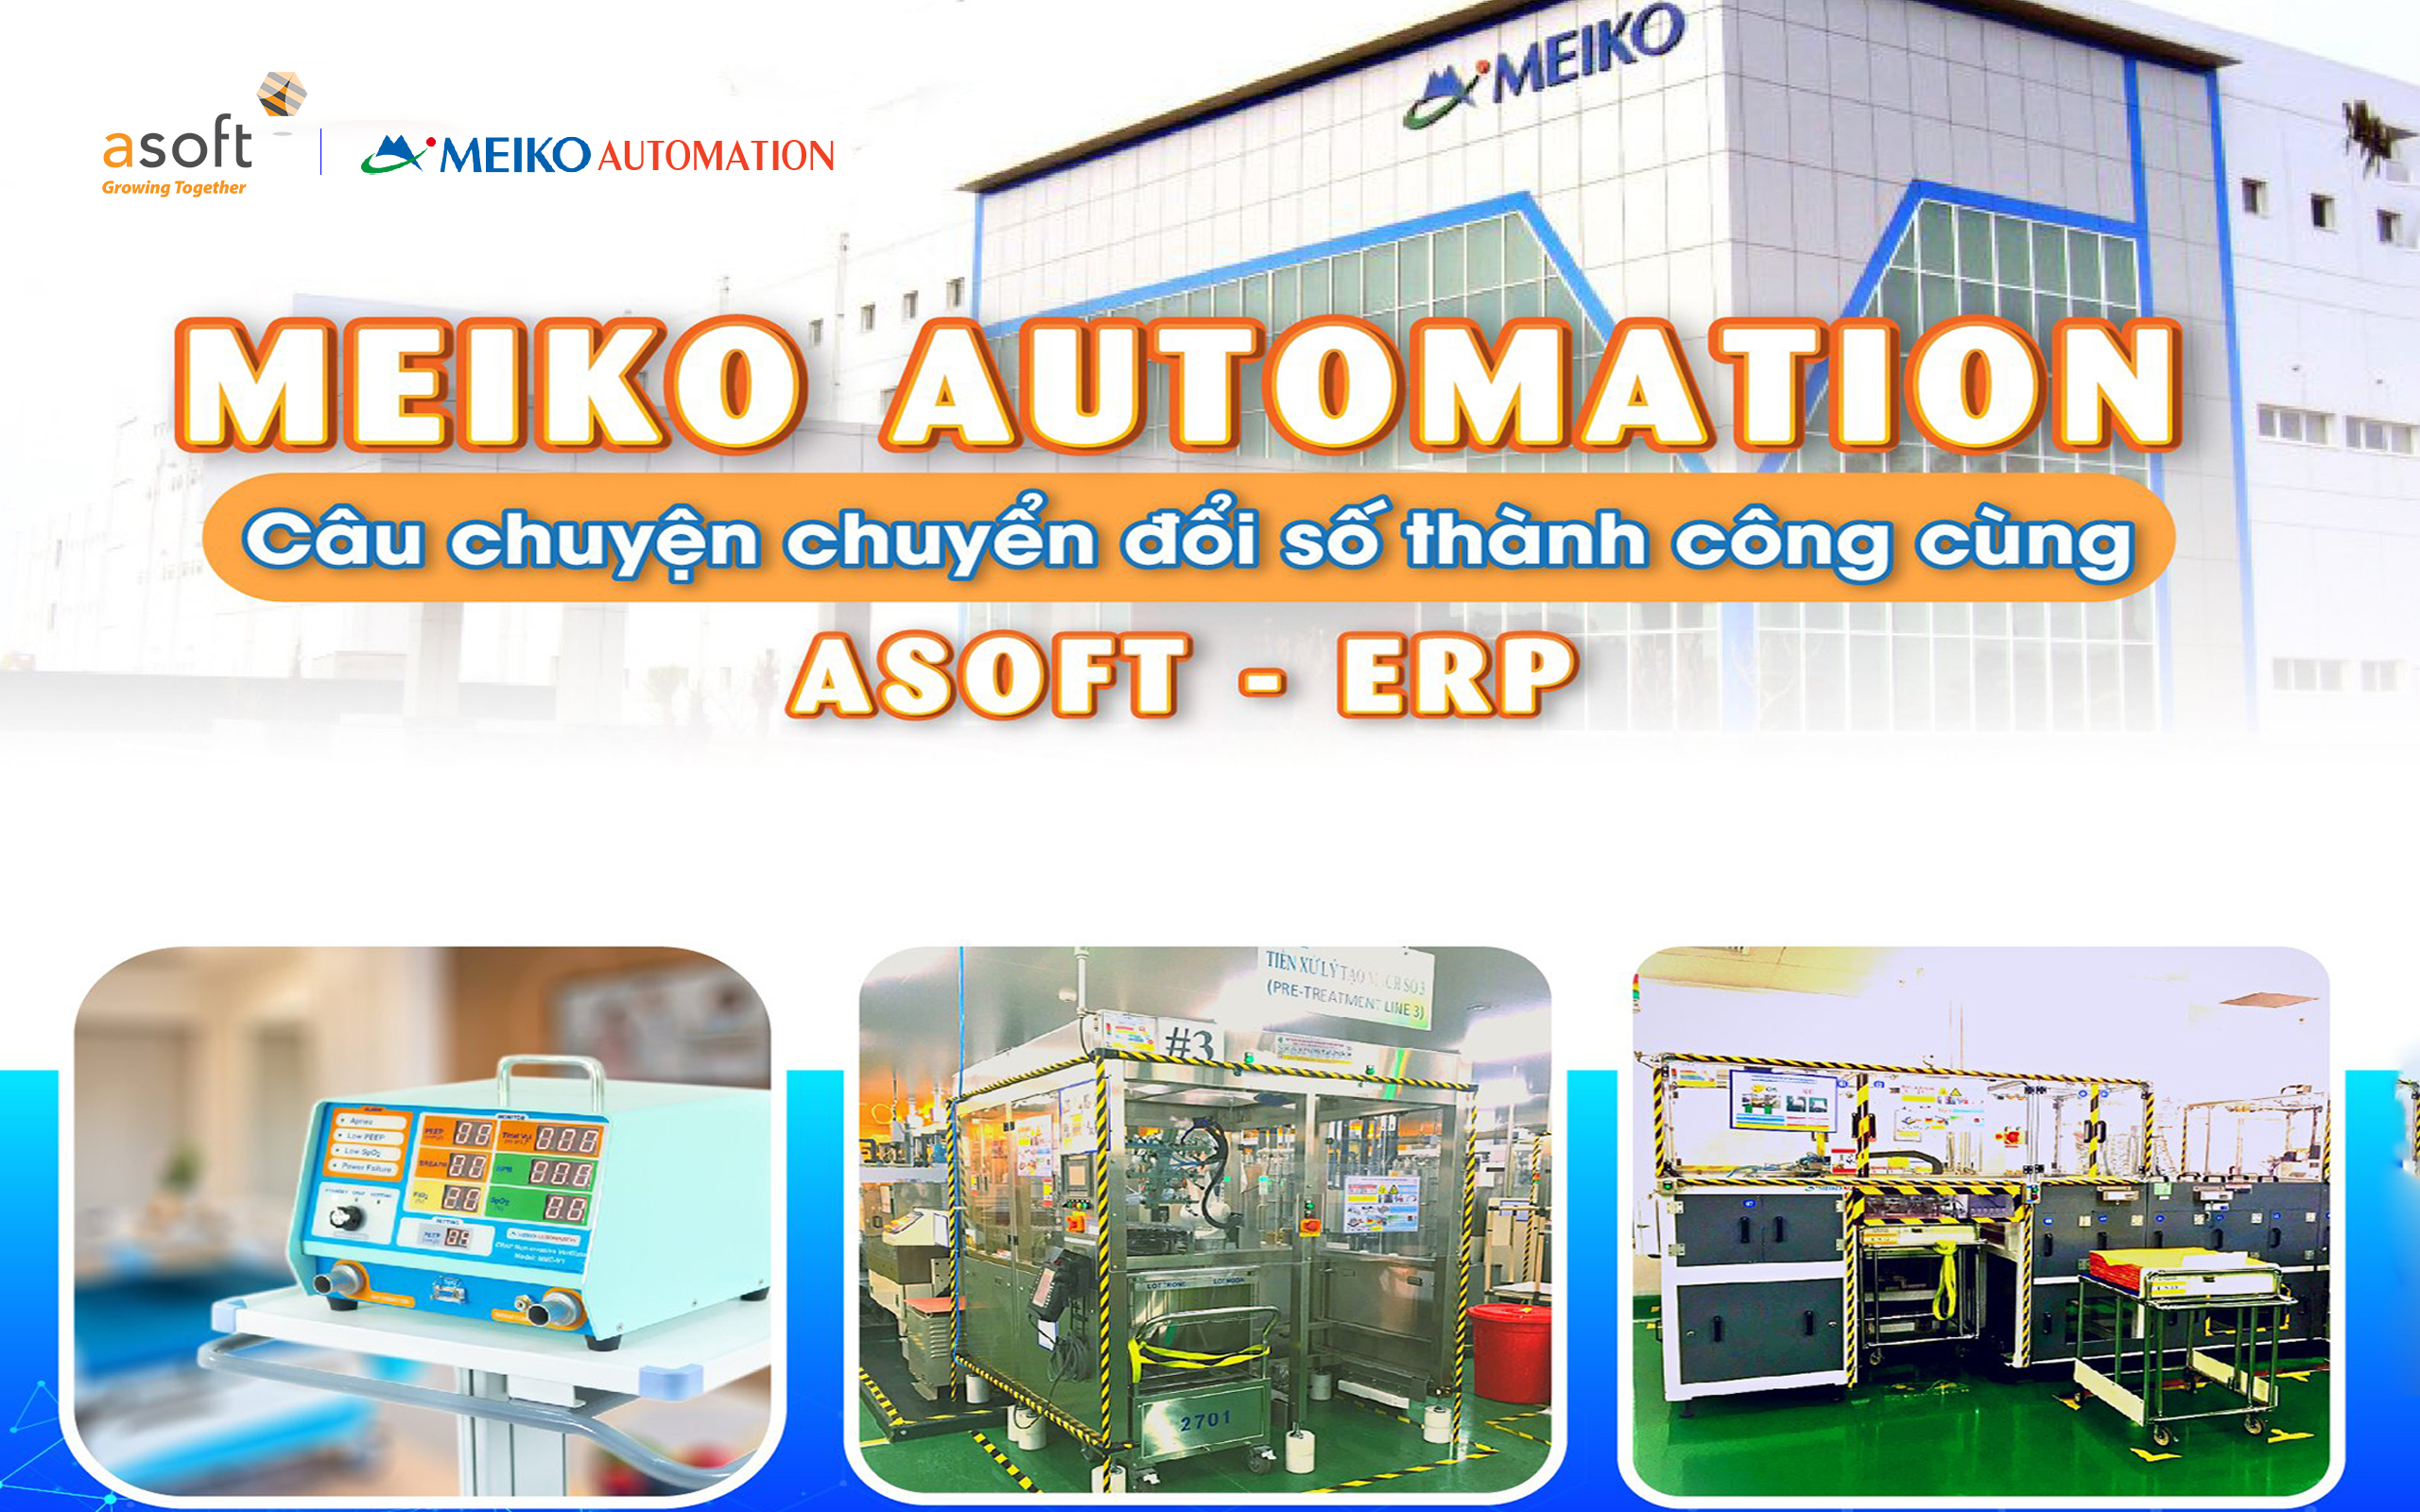 Meiko Automation - Câu chuyện chuyển đổi số thành công cùng ASOFT-ERP